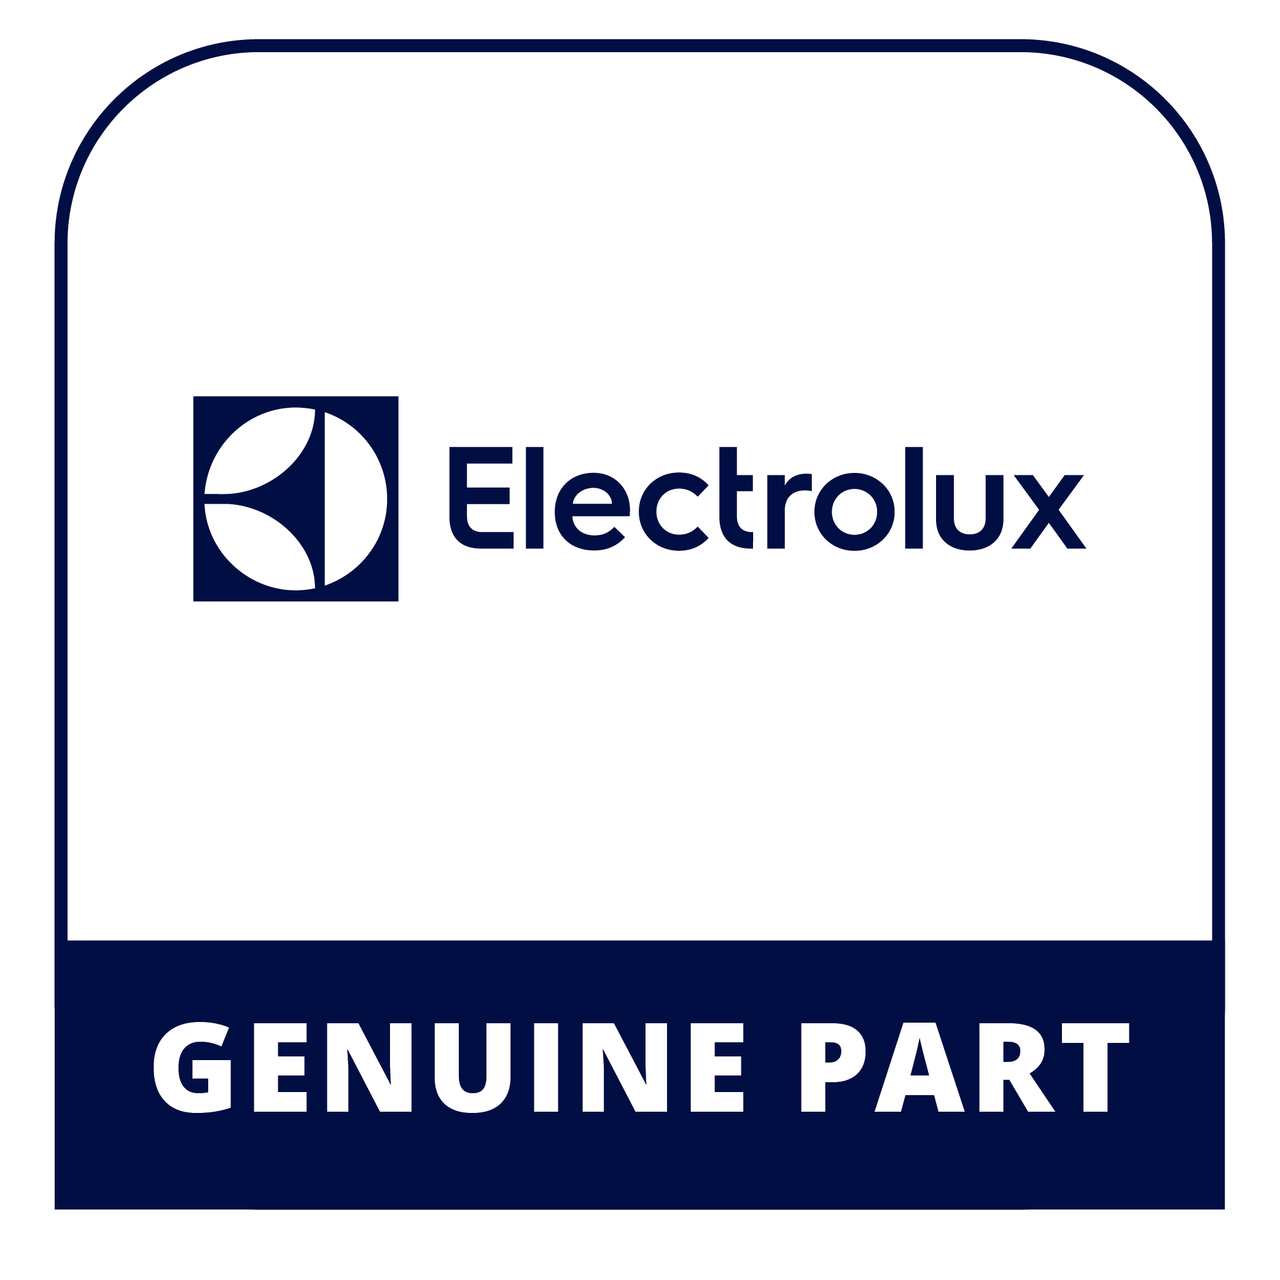 Frigidaire - Electrolux 241990203 Door Stop - Genuine Electrolux Part